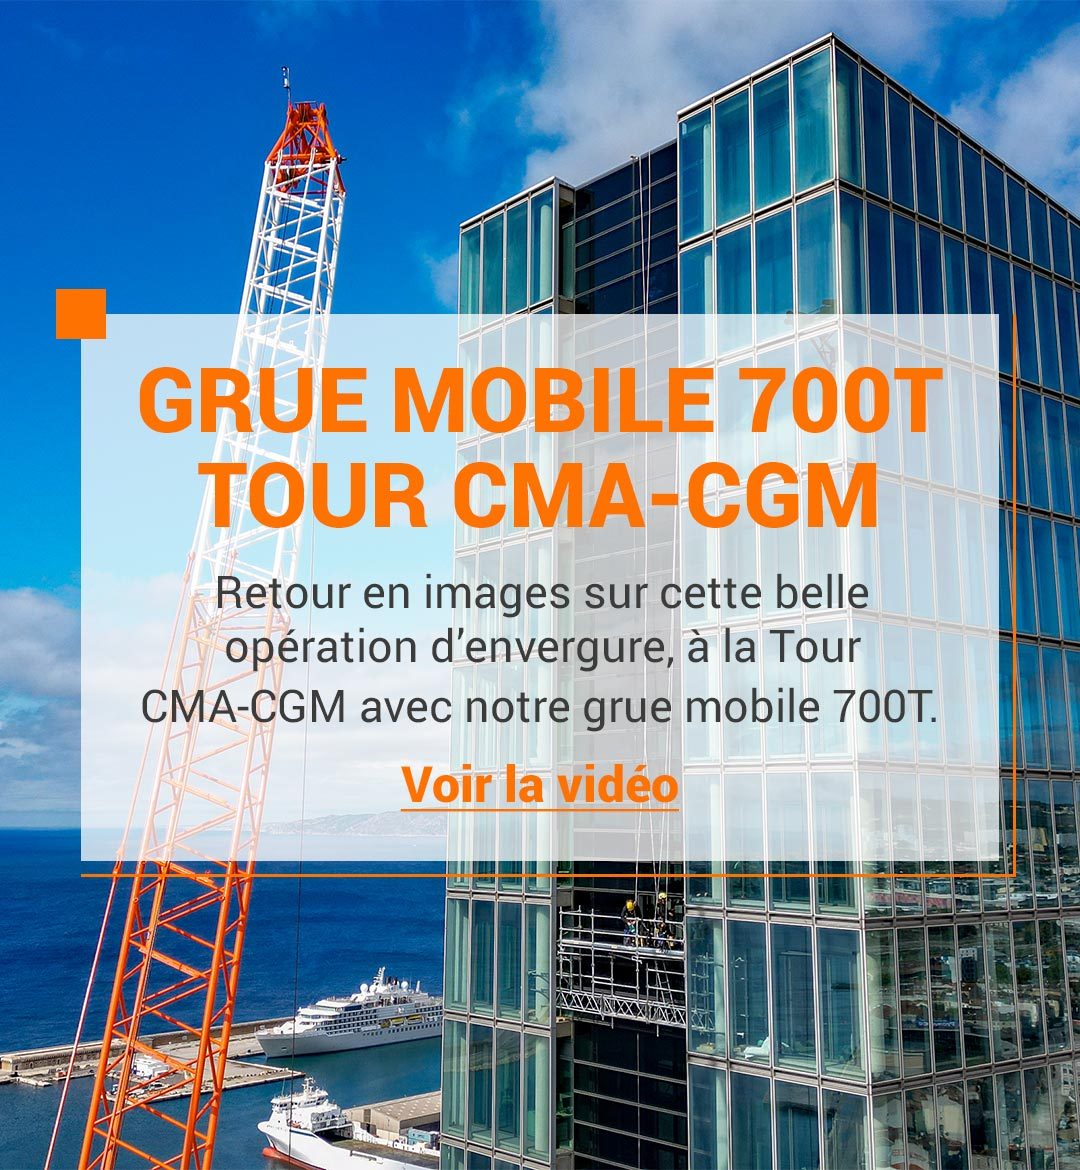 Grue Mobile 700T Tour CMA-CGM - Voir la vidéo